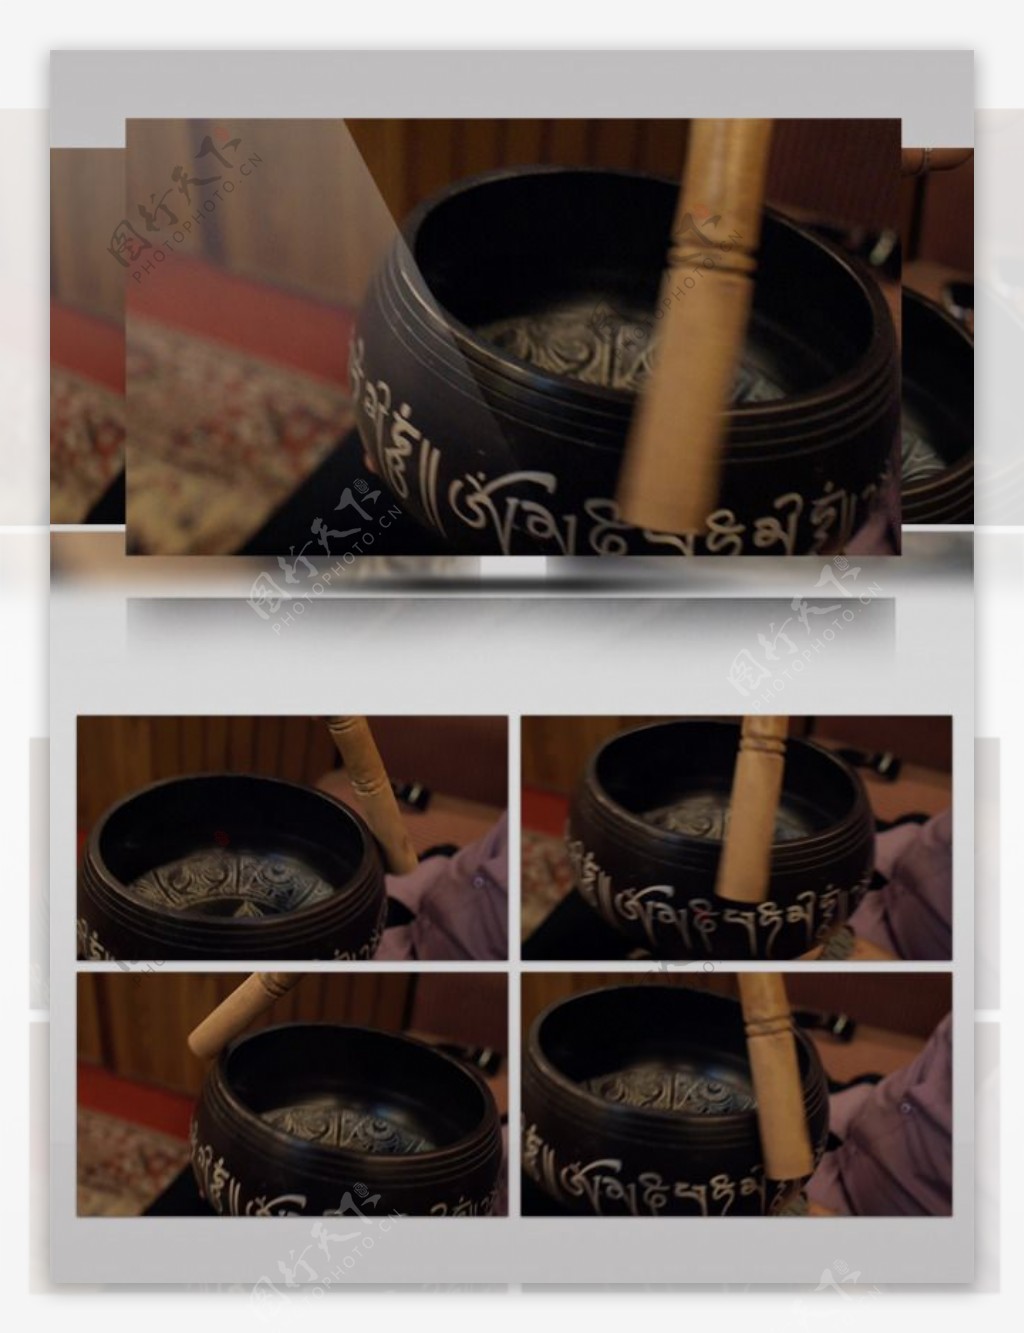 中国传统文化茶道茶具展示祈福祈求仪式